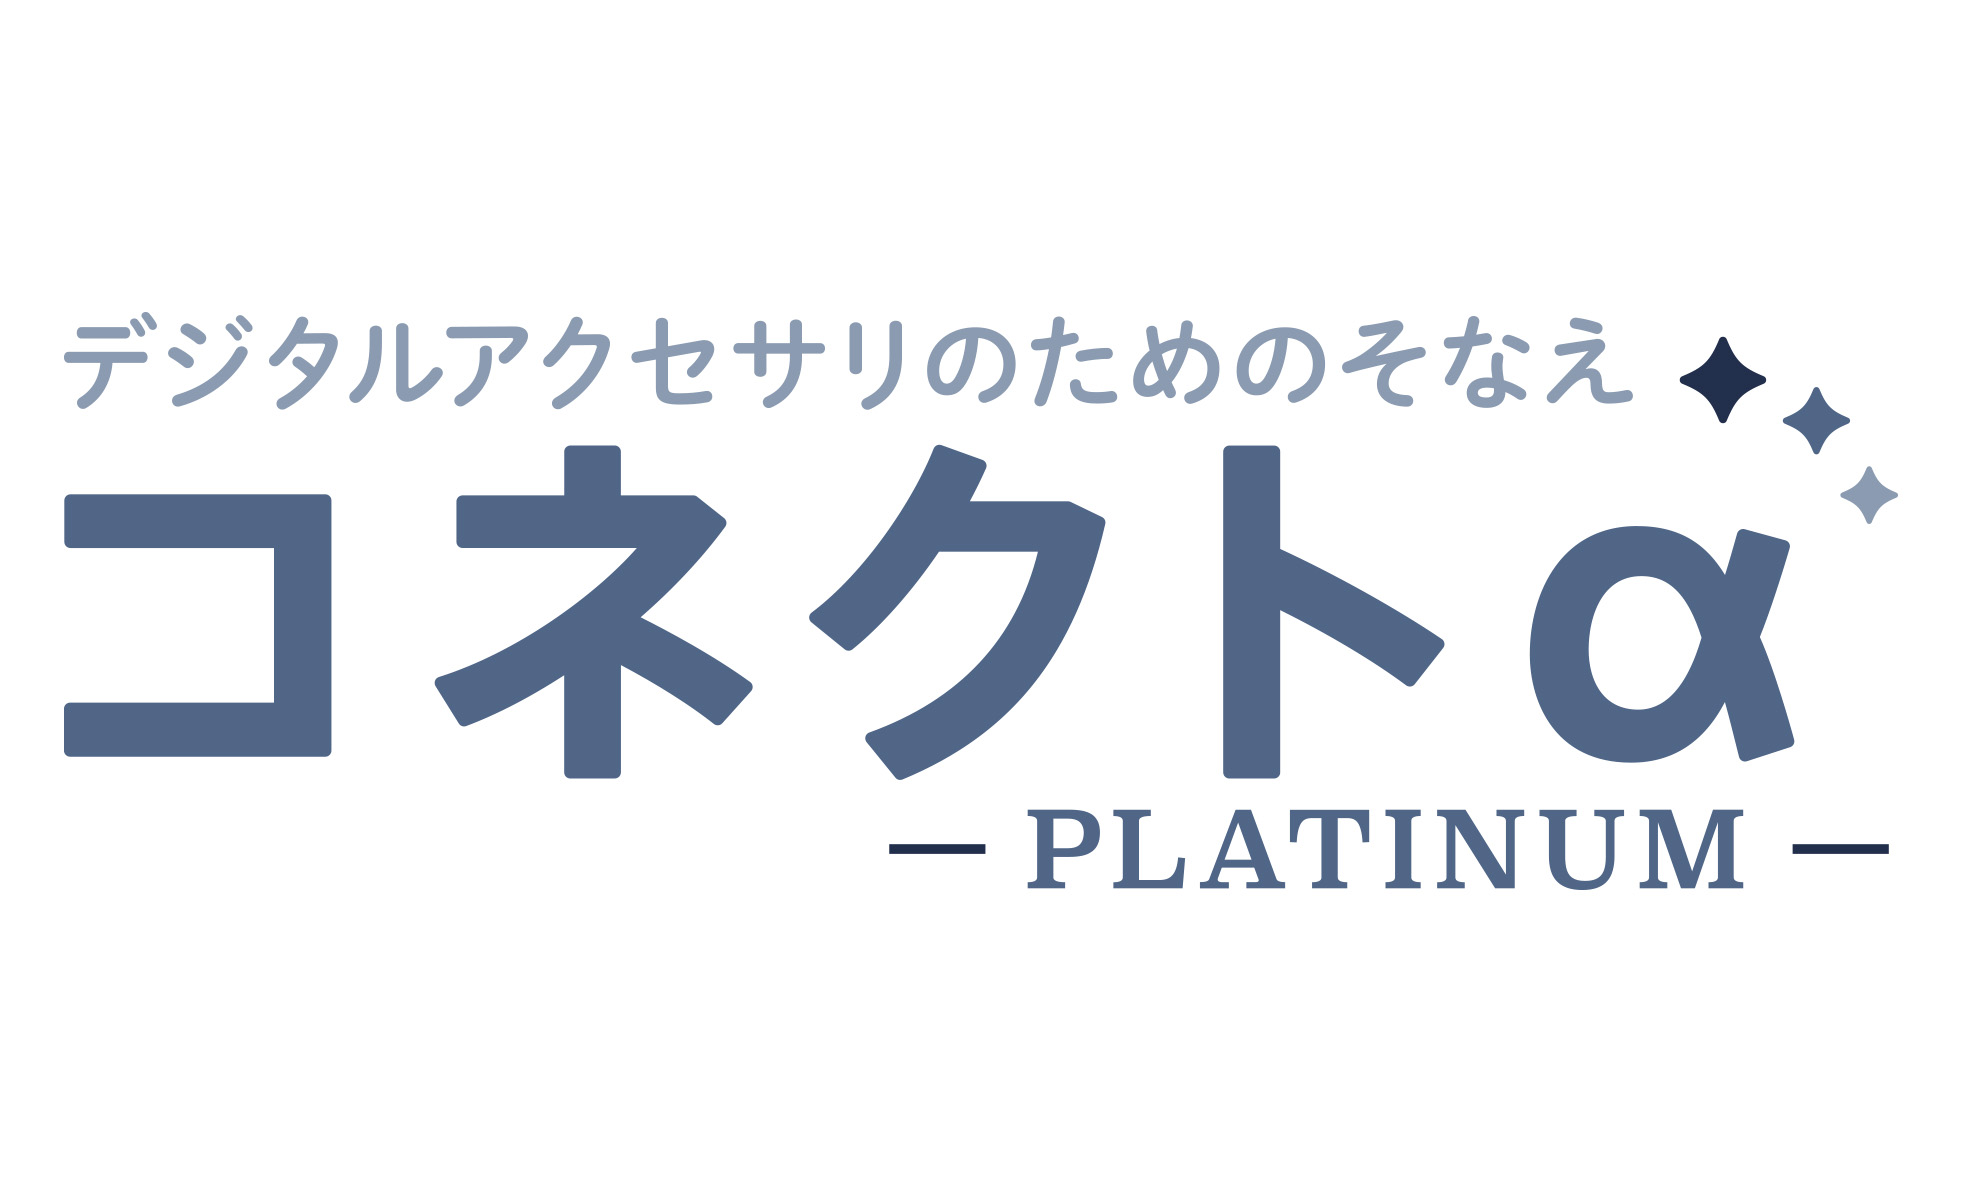 デジタルほけん コネクトα Platinum